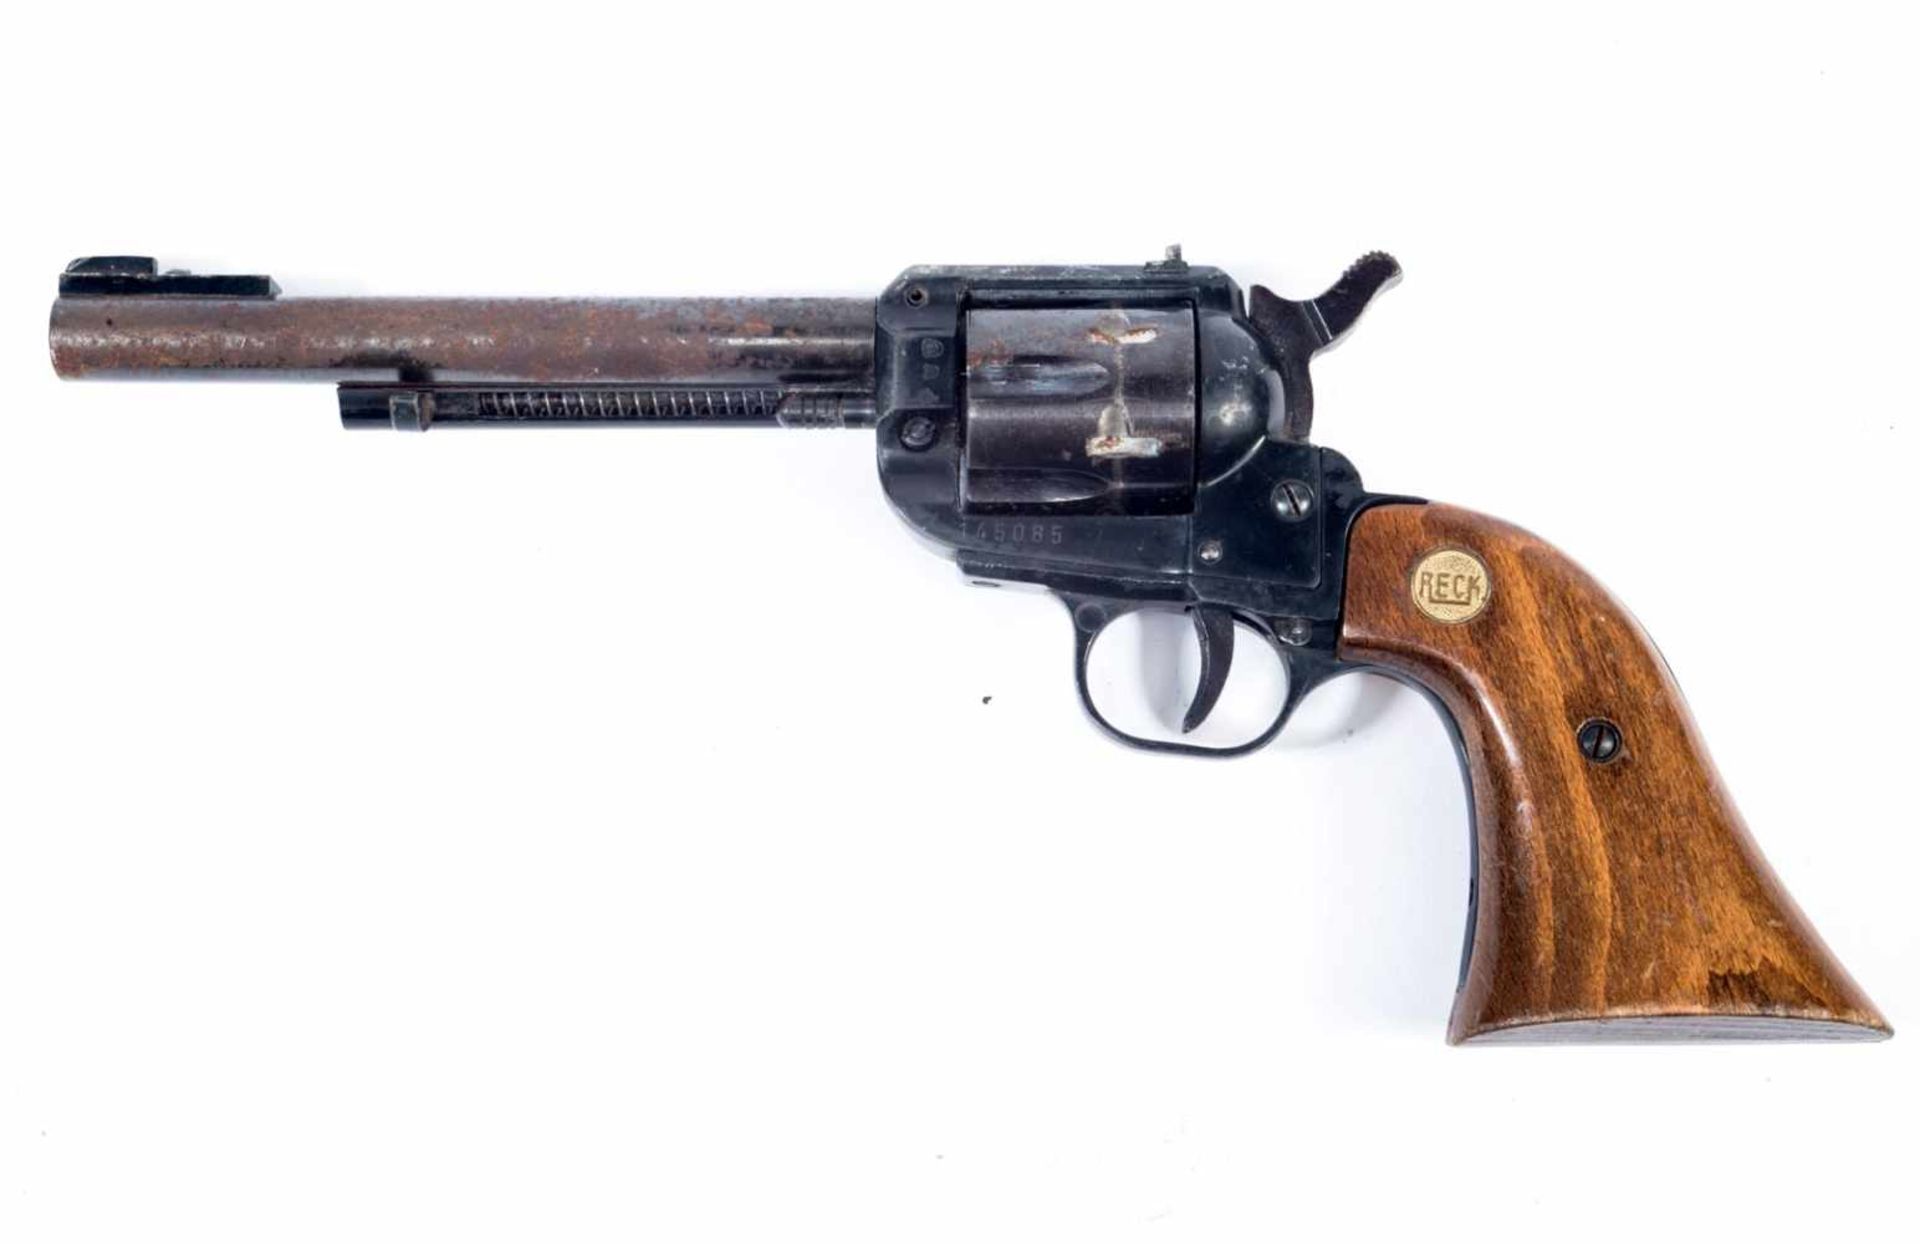 Revolver Reck 22lr Catégorie B Crosse en bois, pastille marquée Reck . Calibre 22lr. Numéro 145085 .